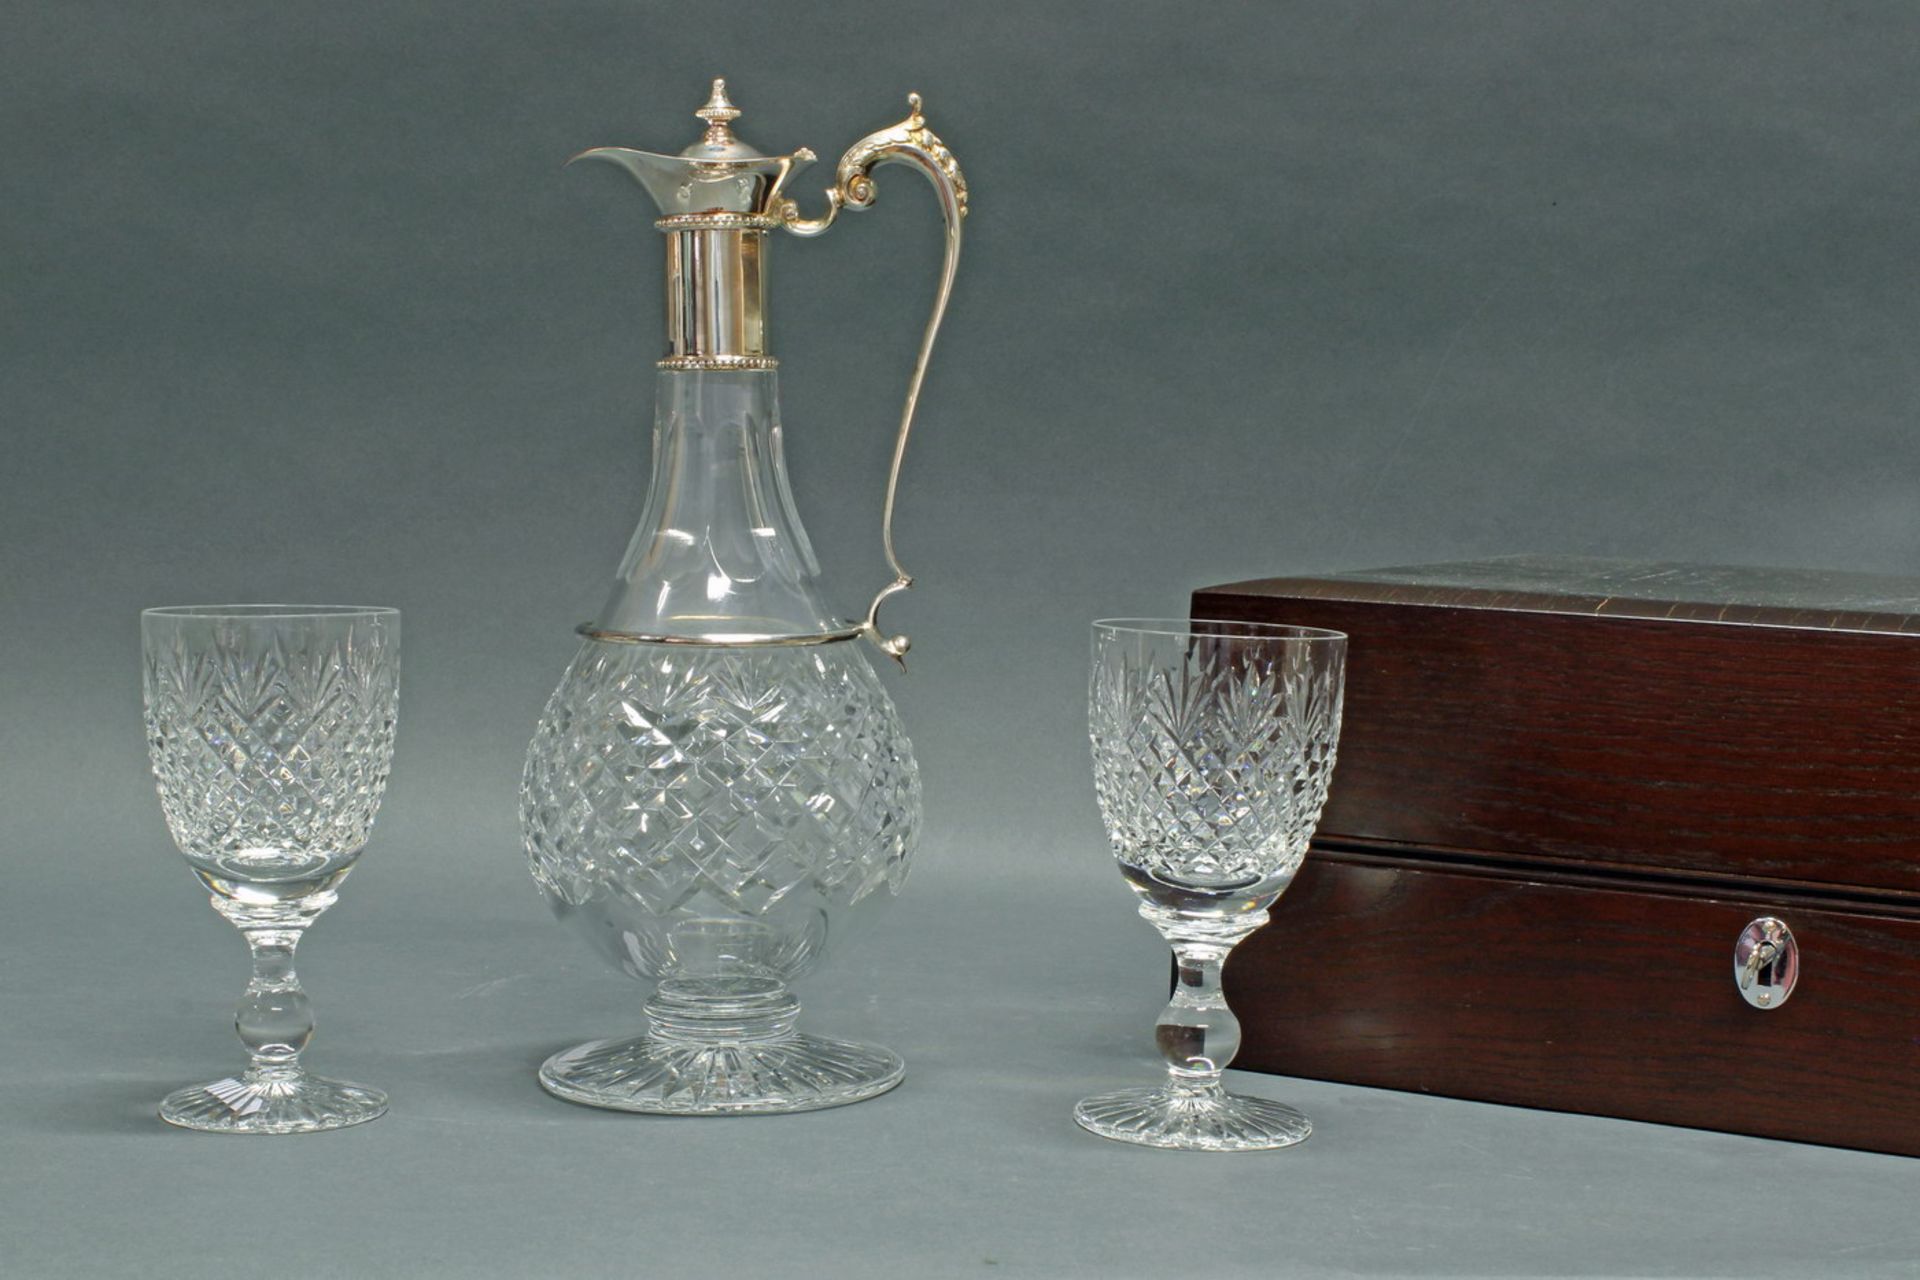 Karaffe mit Paar Weingläsern, Silber 925, farbloses Kristallglas im Steineldekor, Karaffe mit Silb